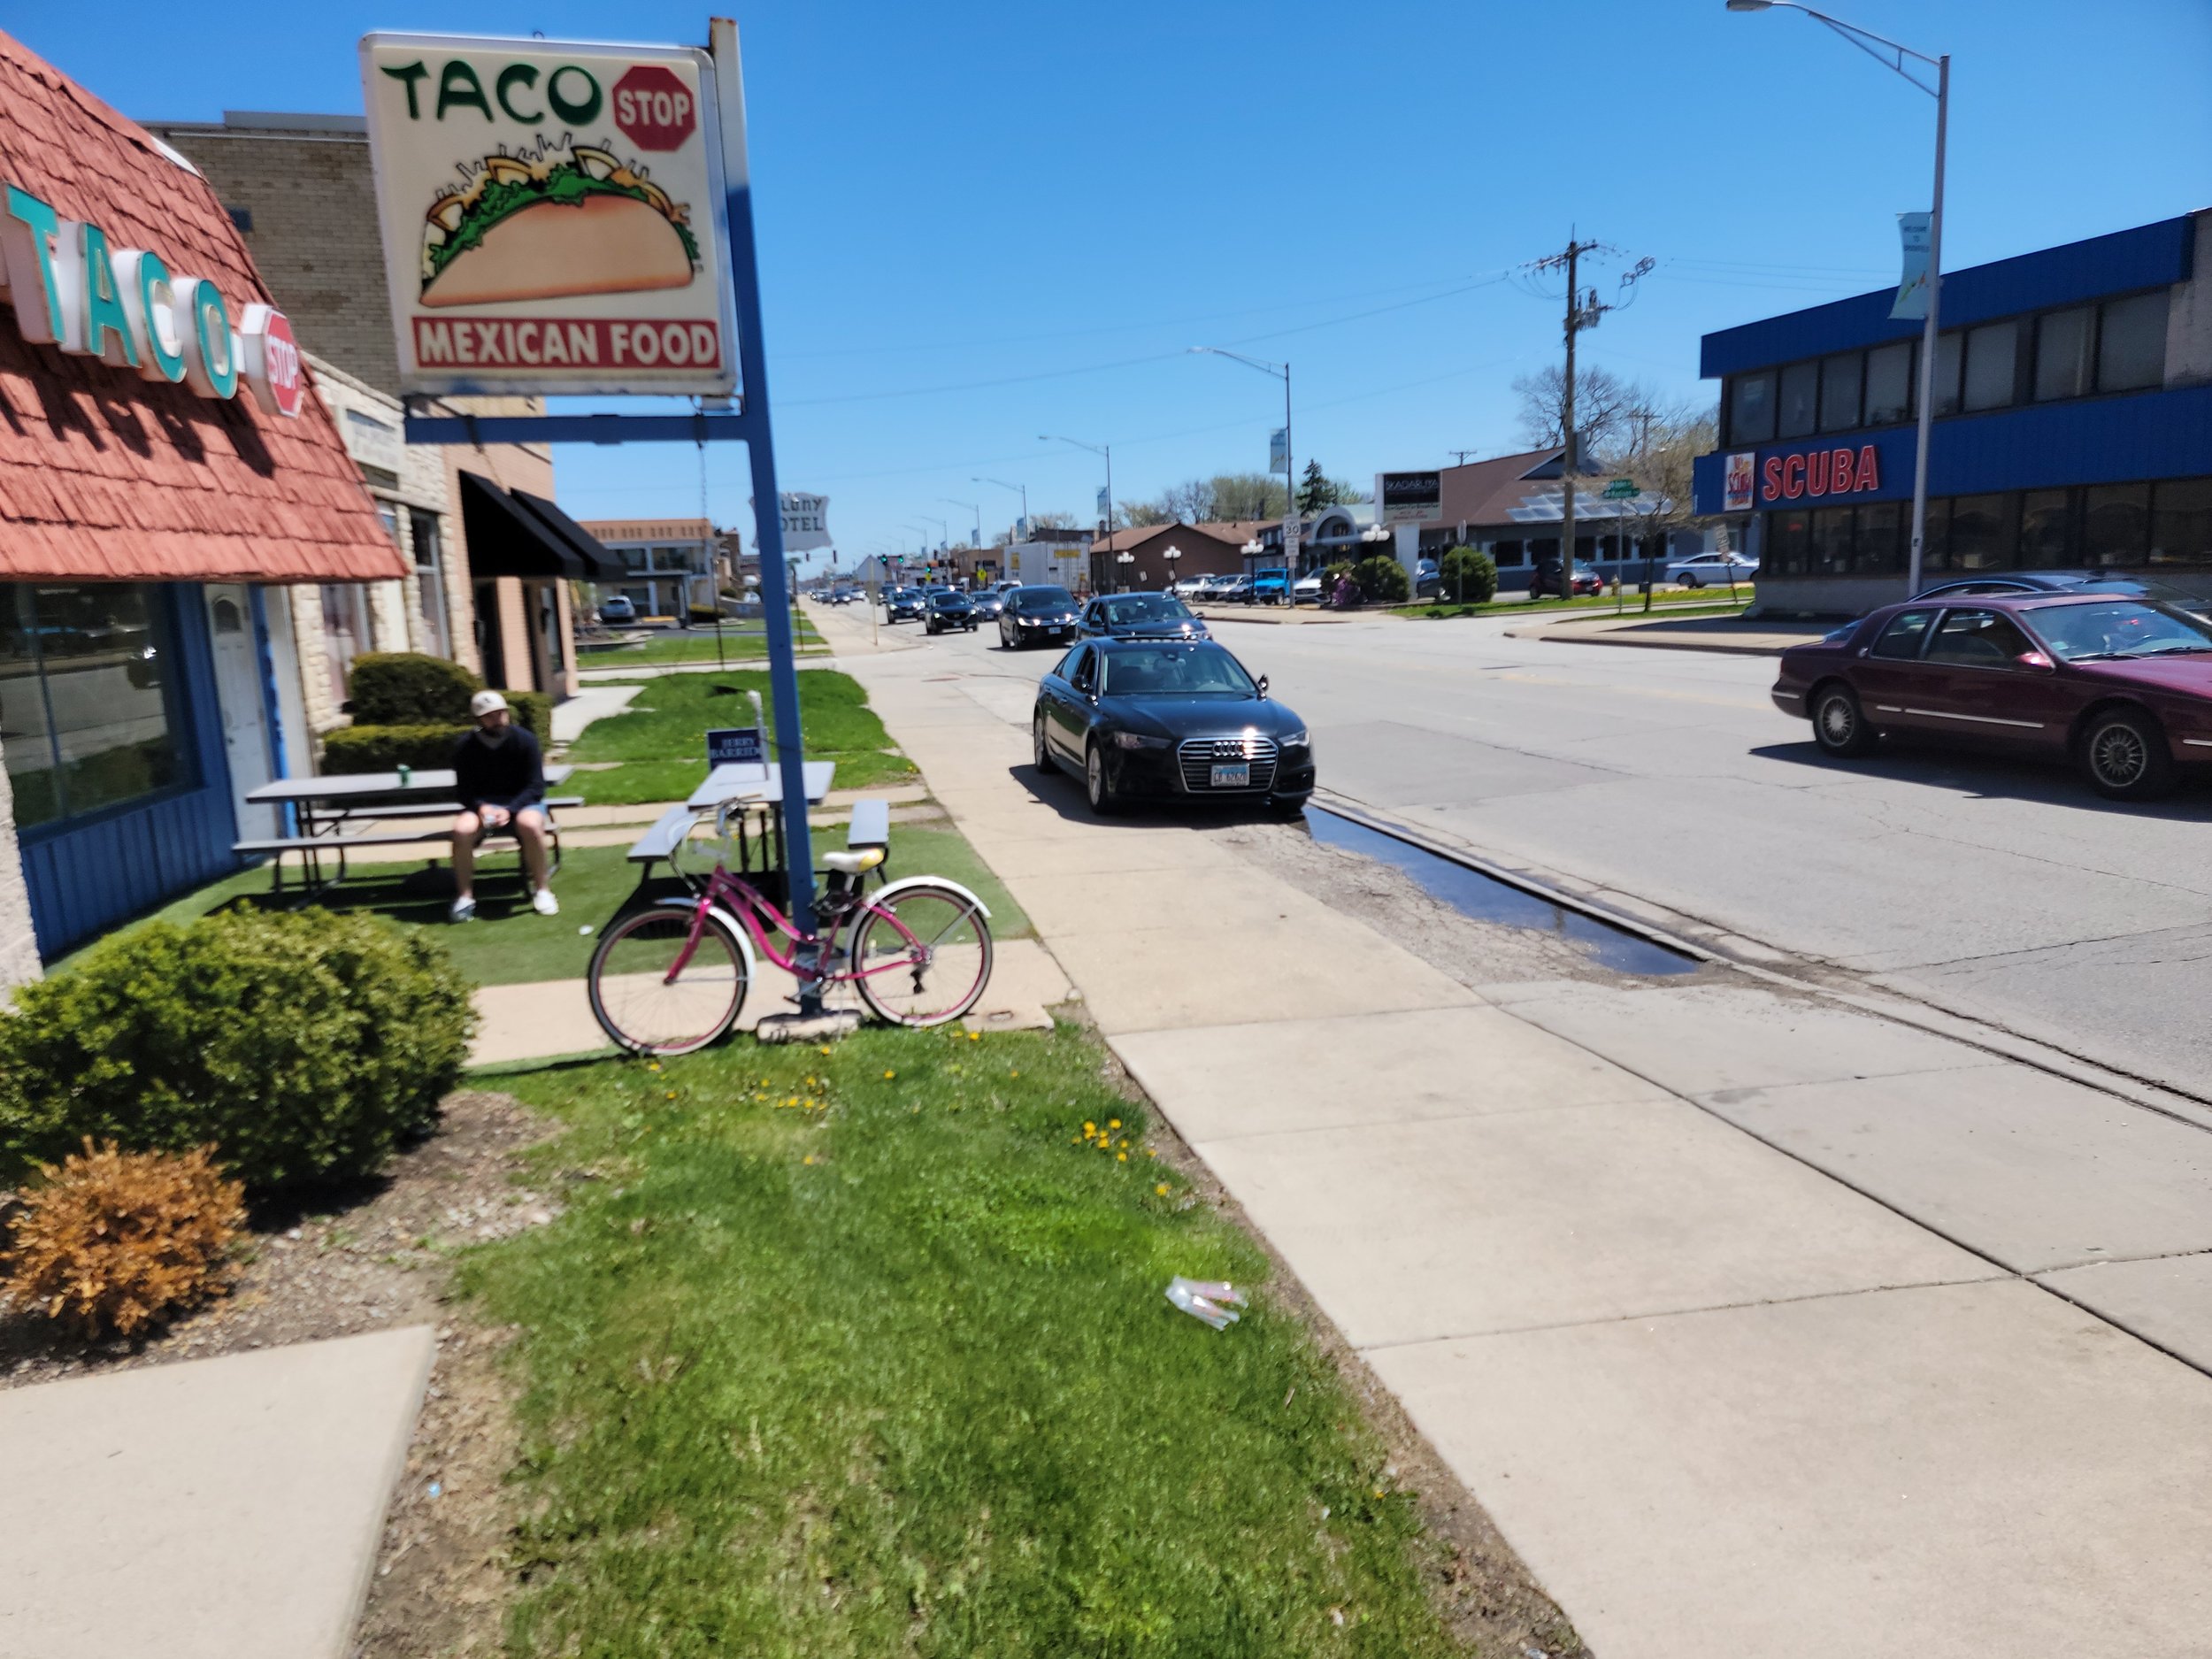 Taco Stop with Car on Sidewalk.jpg